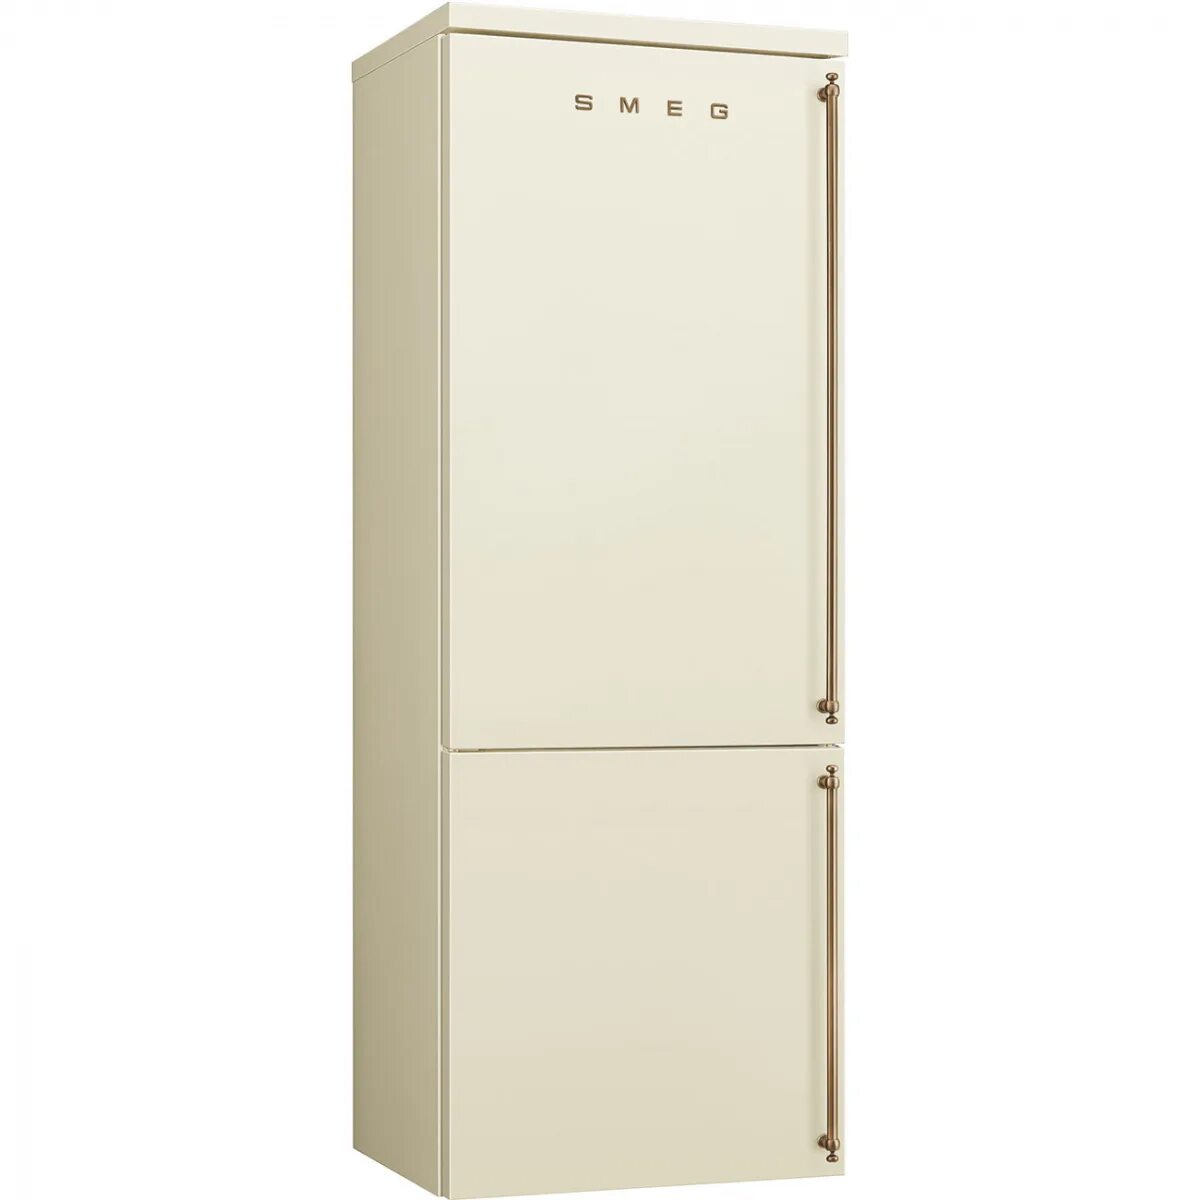 Холодильник Sharp SJ-xe59pmwh. Холодильник Smeg fa8003pos. Sharp SJ-xe55pmbe. Холодильники Smeg fa860p. Холодильник с доставкой спб недорого